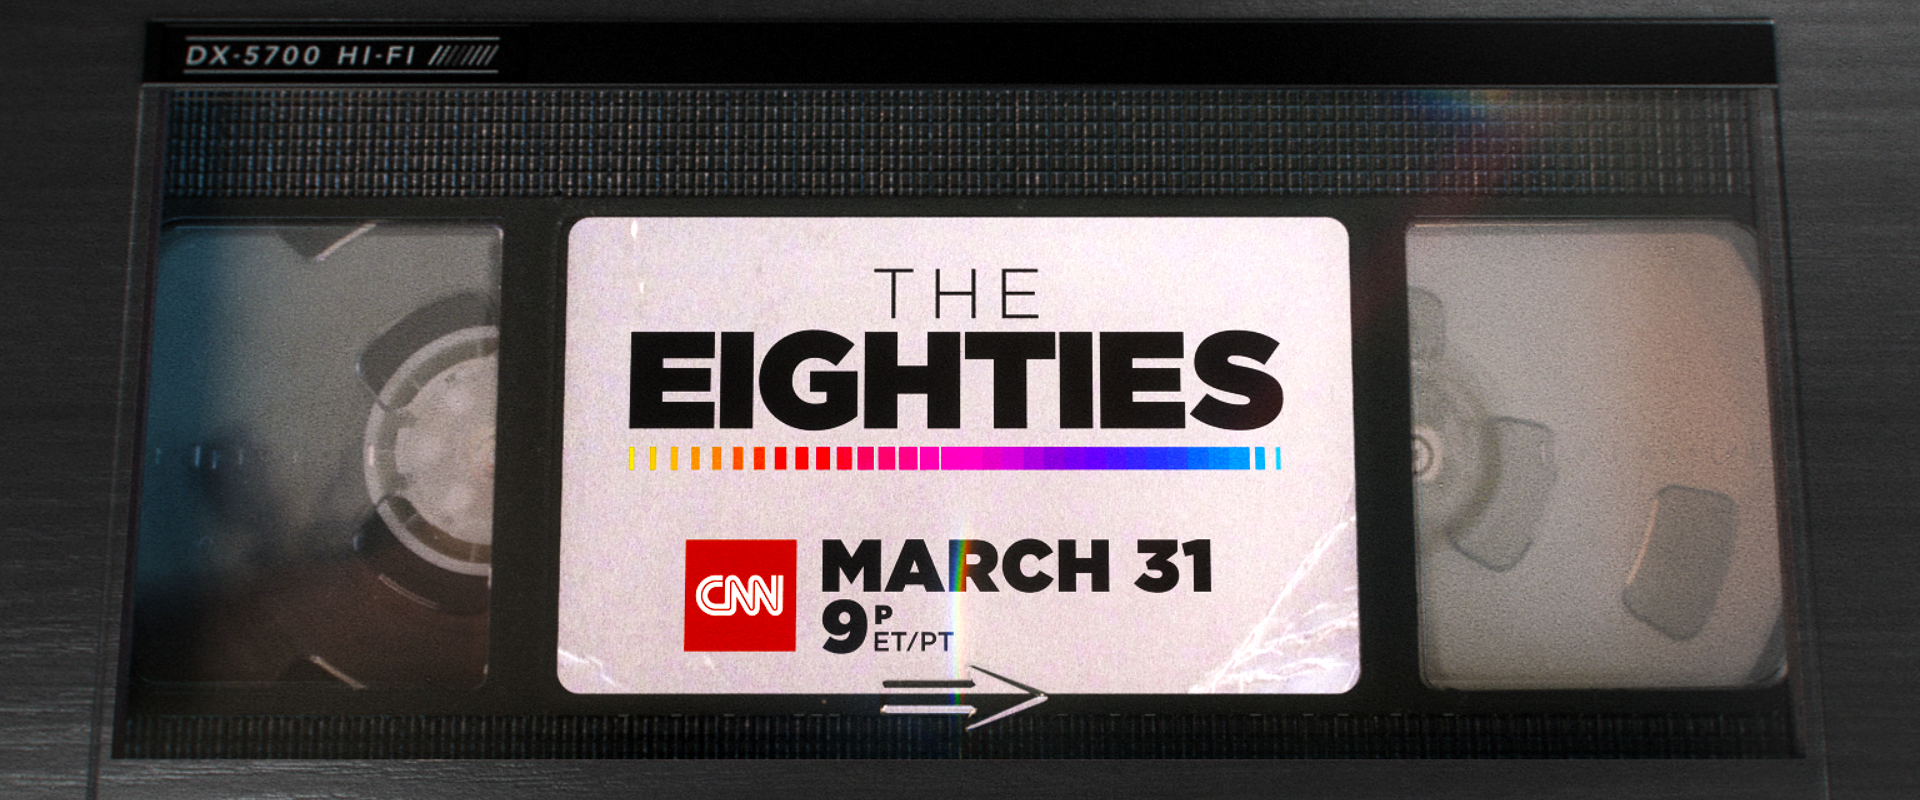 &lt;a href=/cnn-the-eighties&gt;&lt;strong&gt;CNN - The Eighties&lt;/strong&gt; &lt;/a&gt;